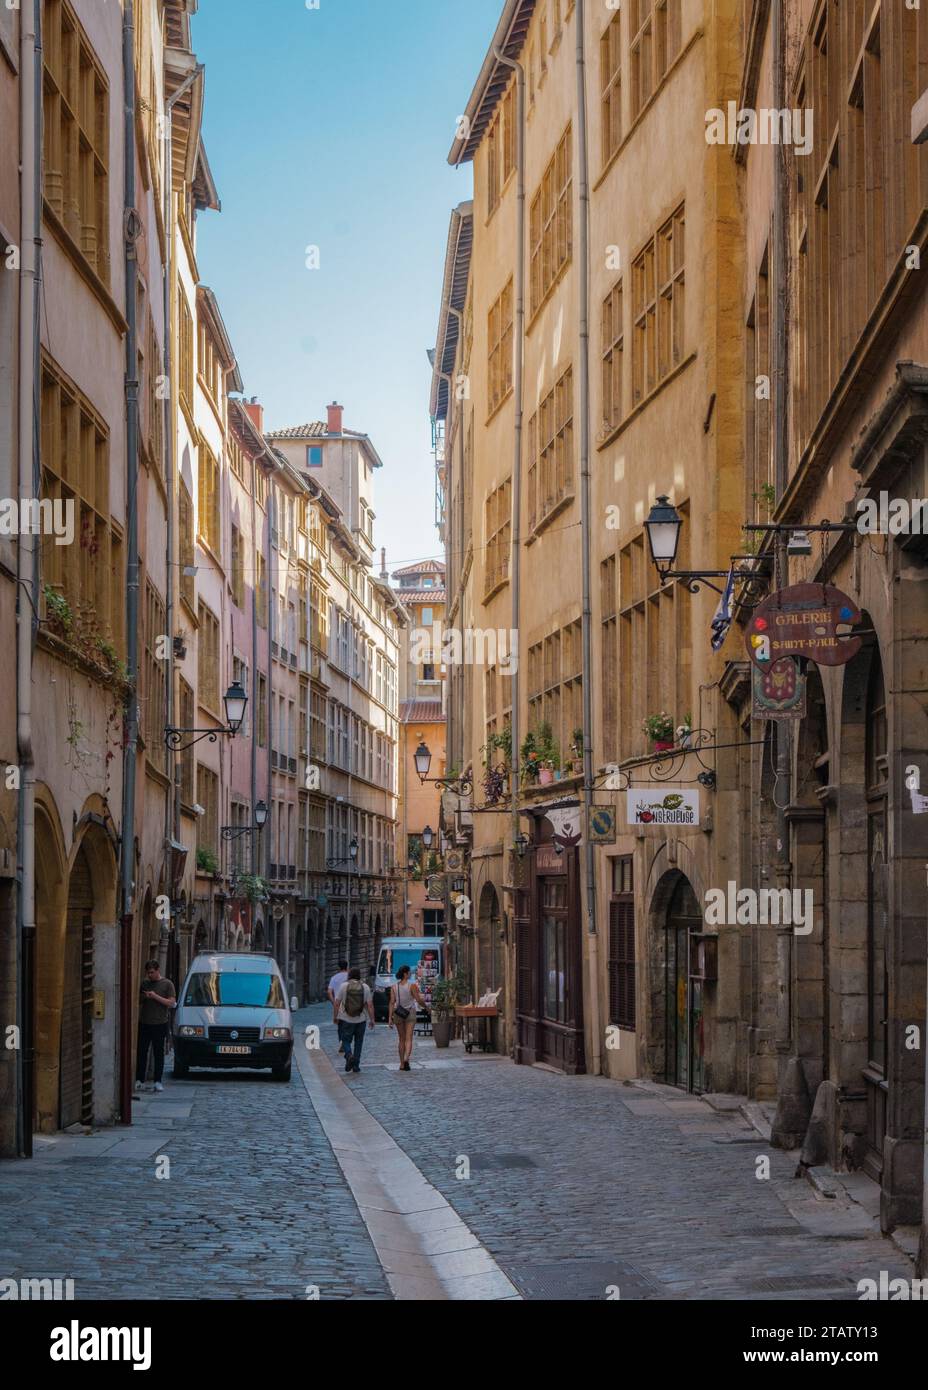 "Rue Juiverie", una stradina asfaltata con belle facciate medievali nella Vieux Lyon, il quartiere storico di Lione (Francia). Il cartello dice 'Galery Sai Foto Stock